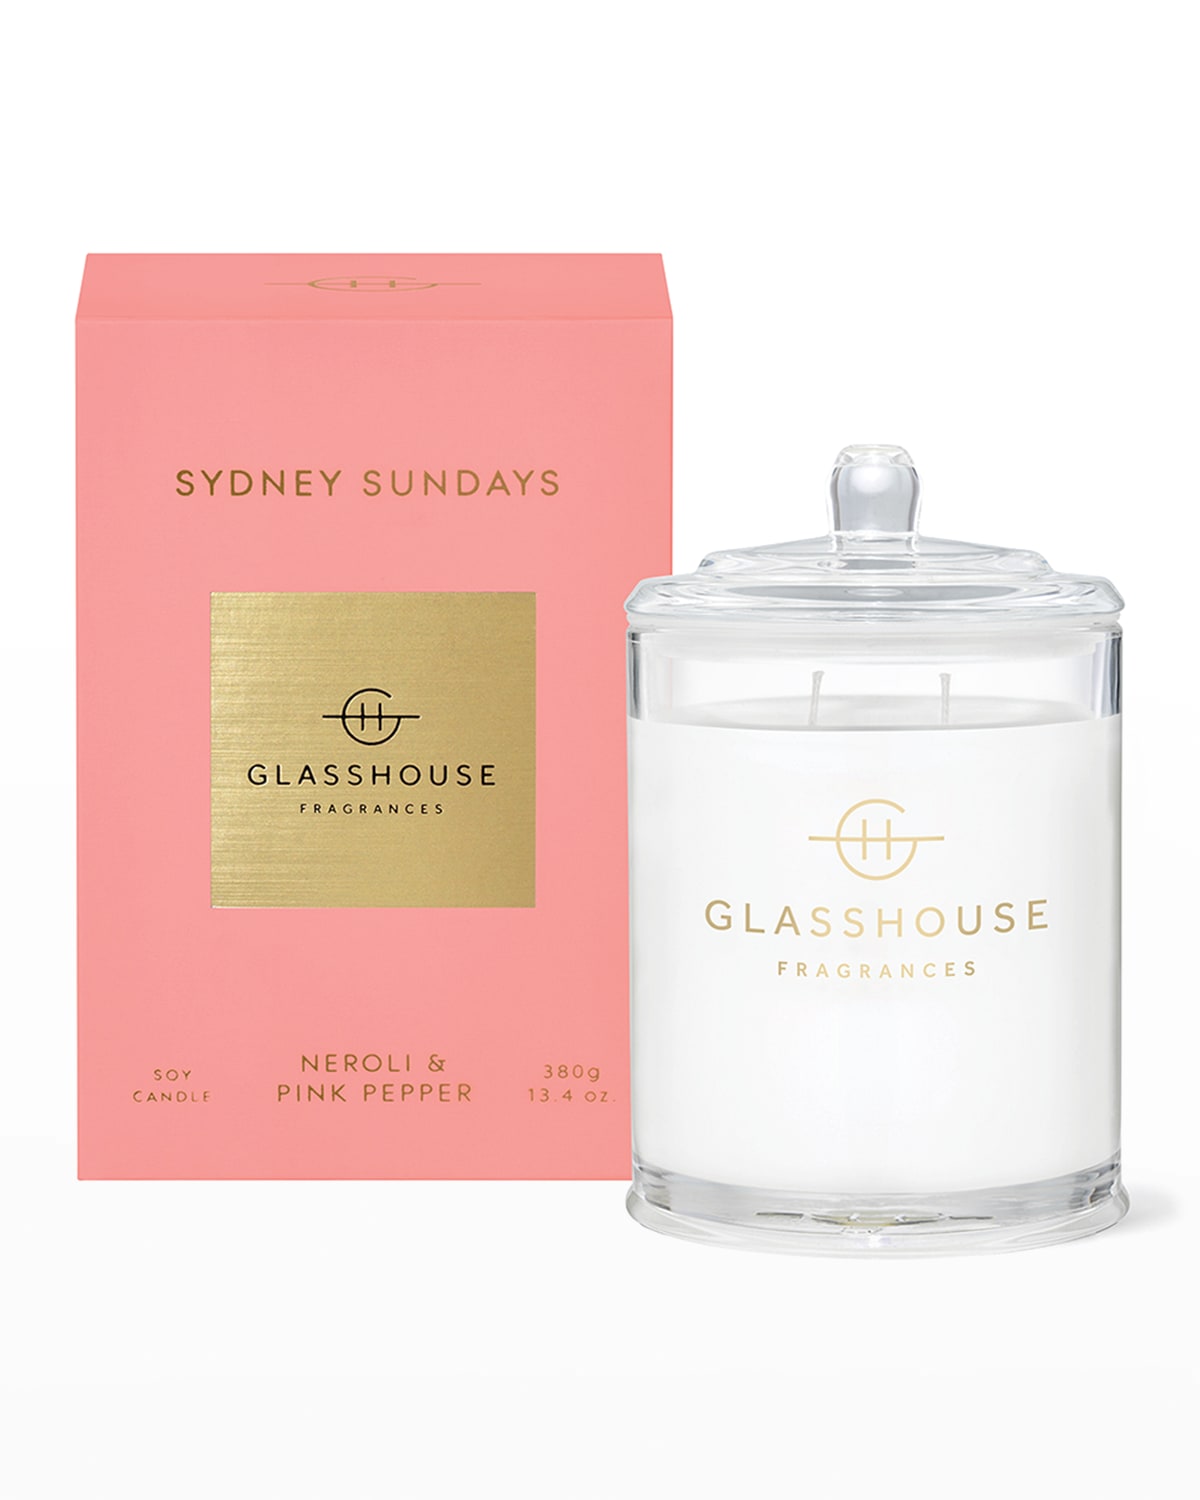 Glasshouse Fragrances 13.4 Oz. Sydney Sundays Scented Candle